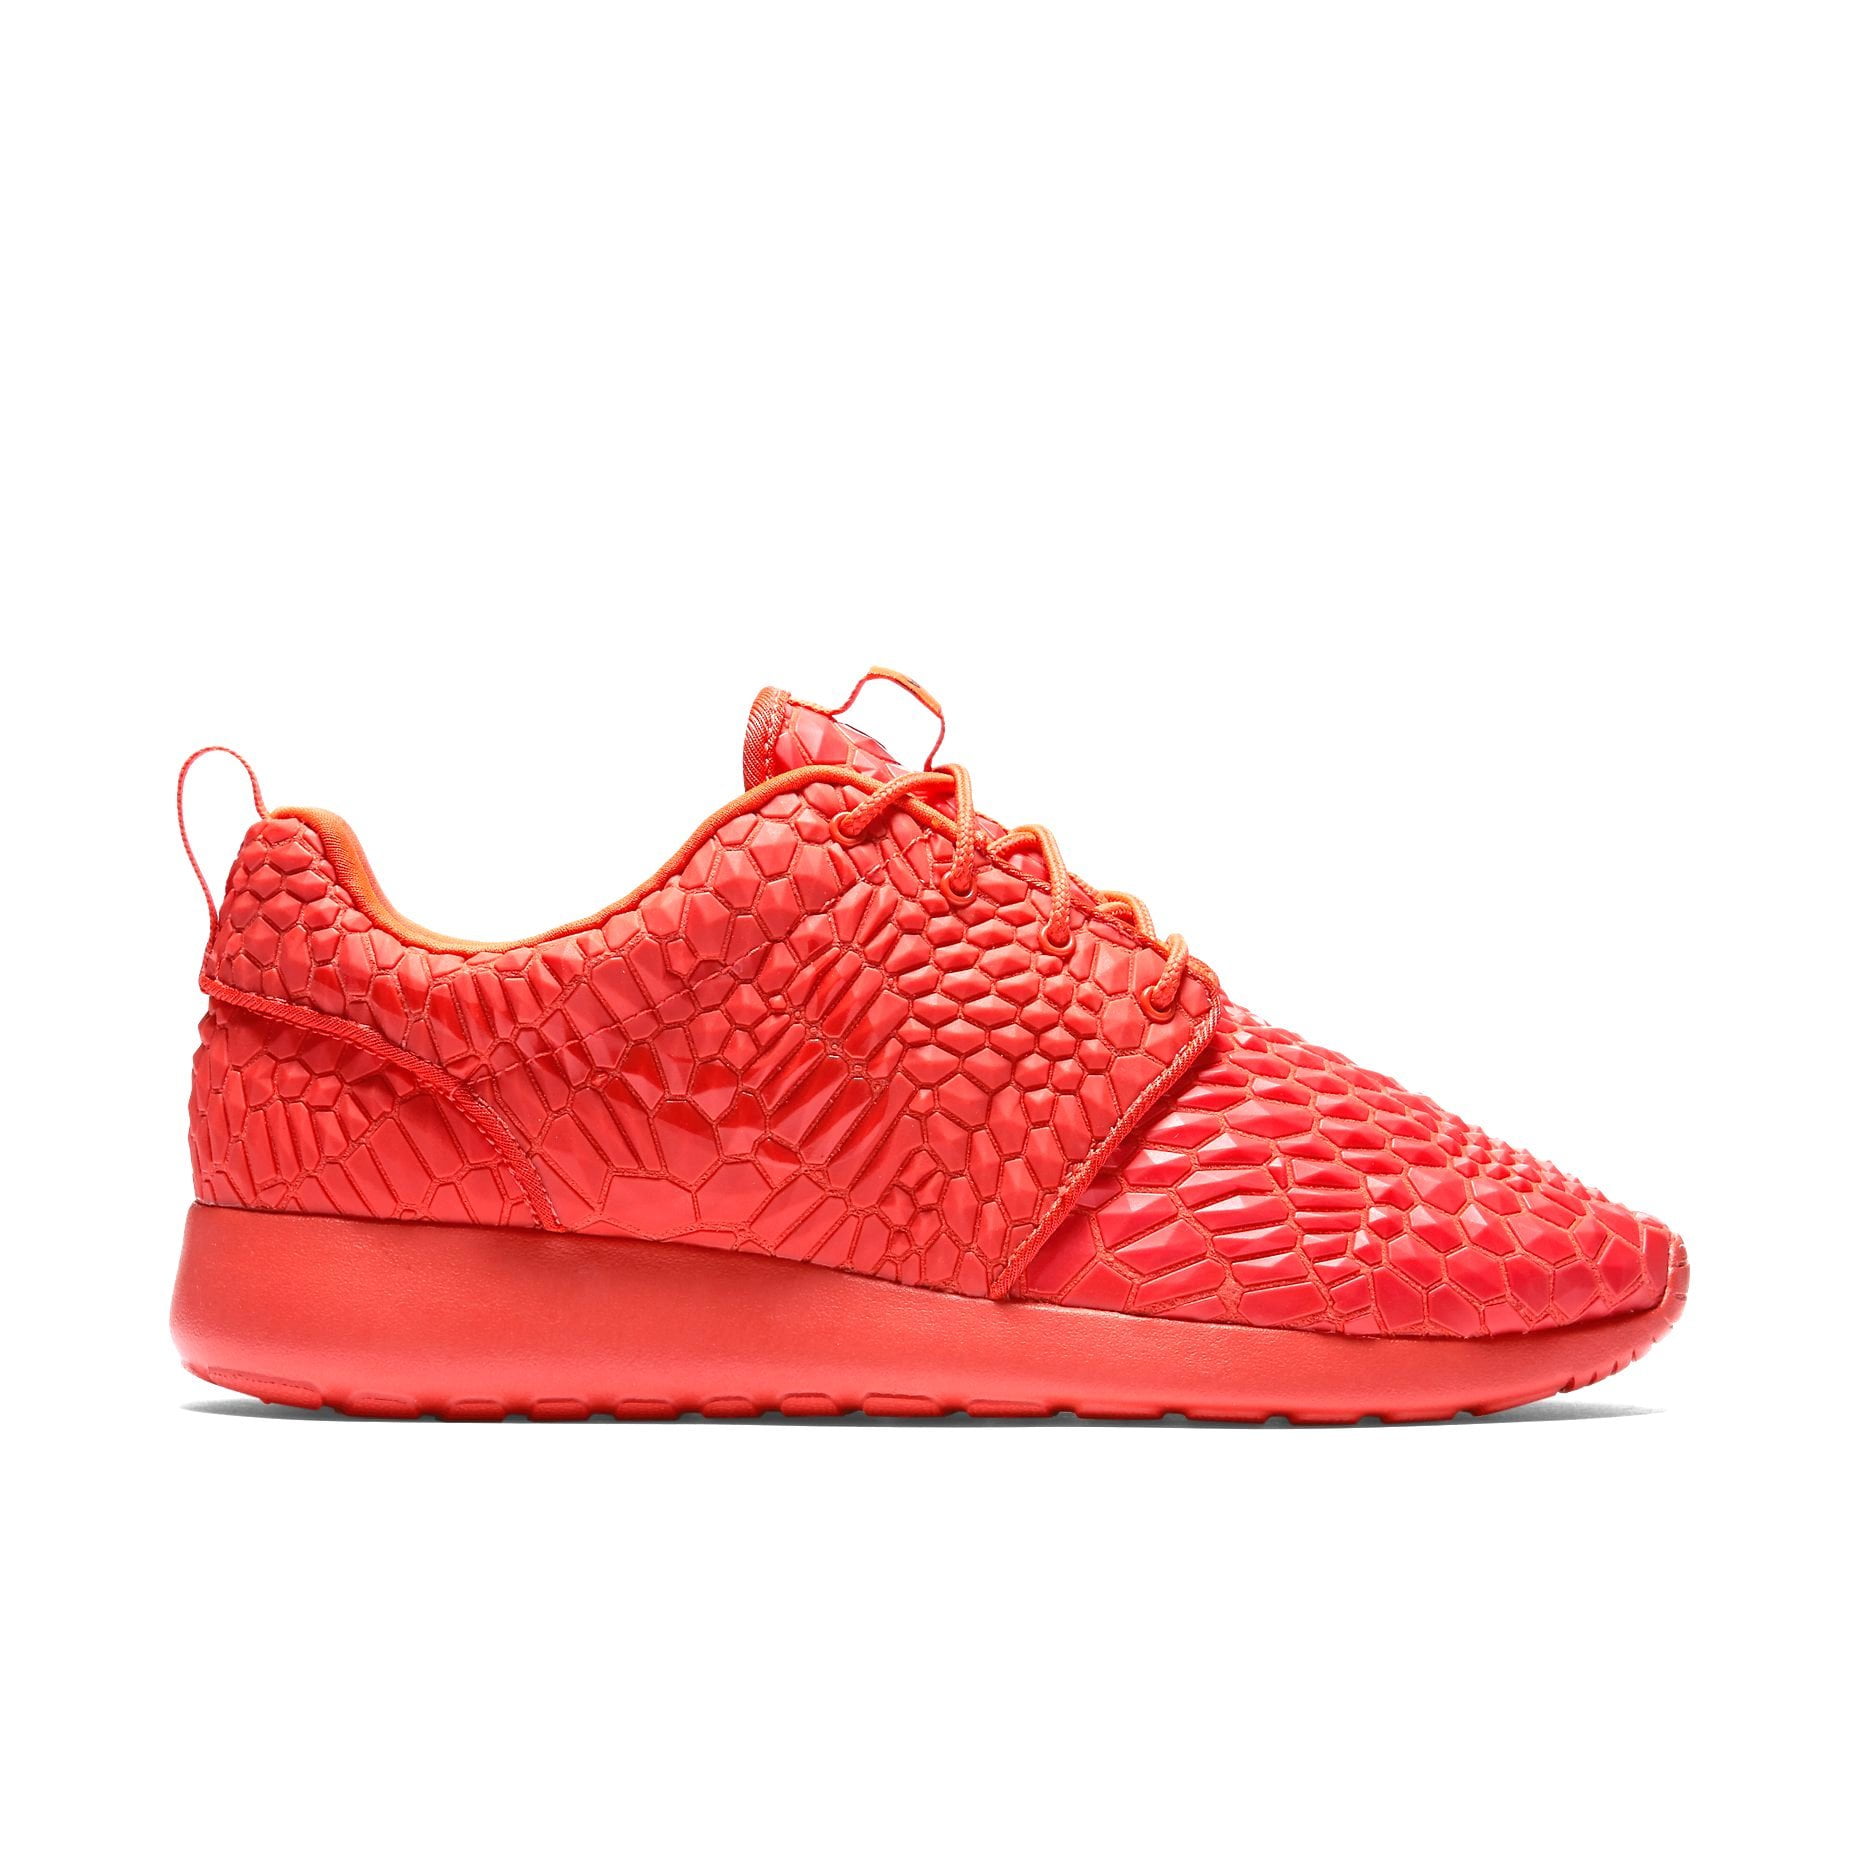 Nike Roshe One DMB Unisex/Adult shoe size 11.5 Casual 807460-600 Bright  Crimson